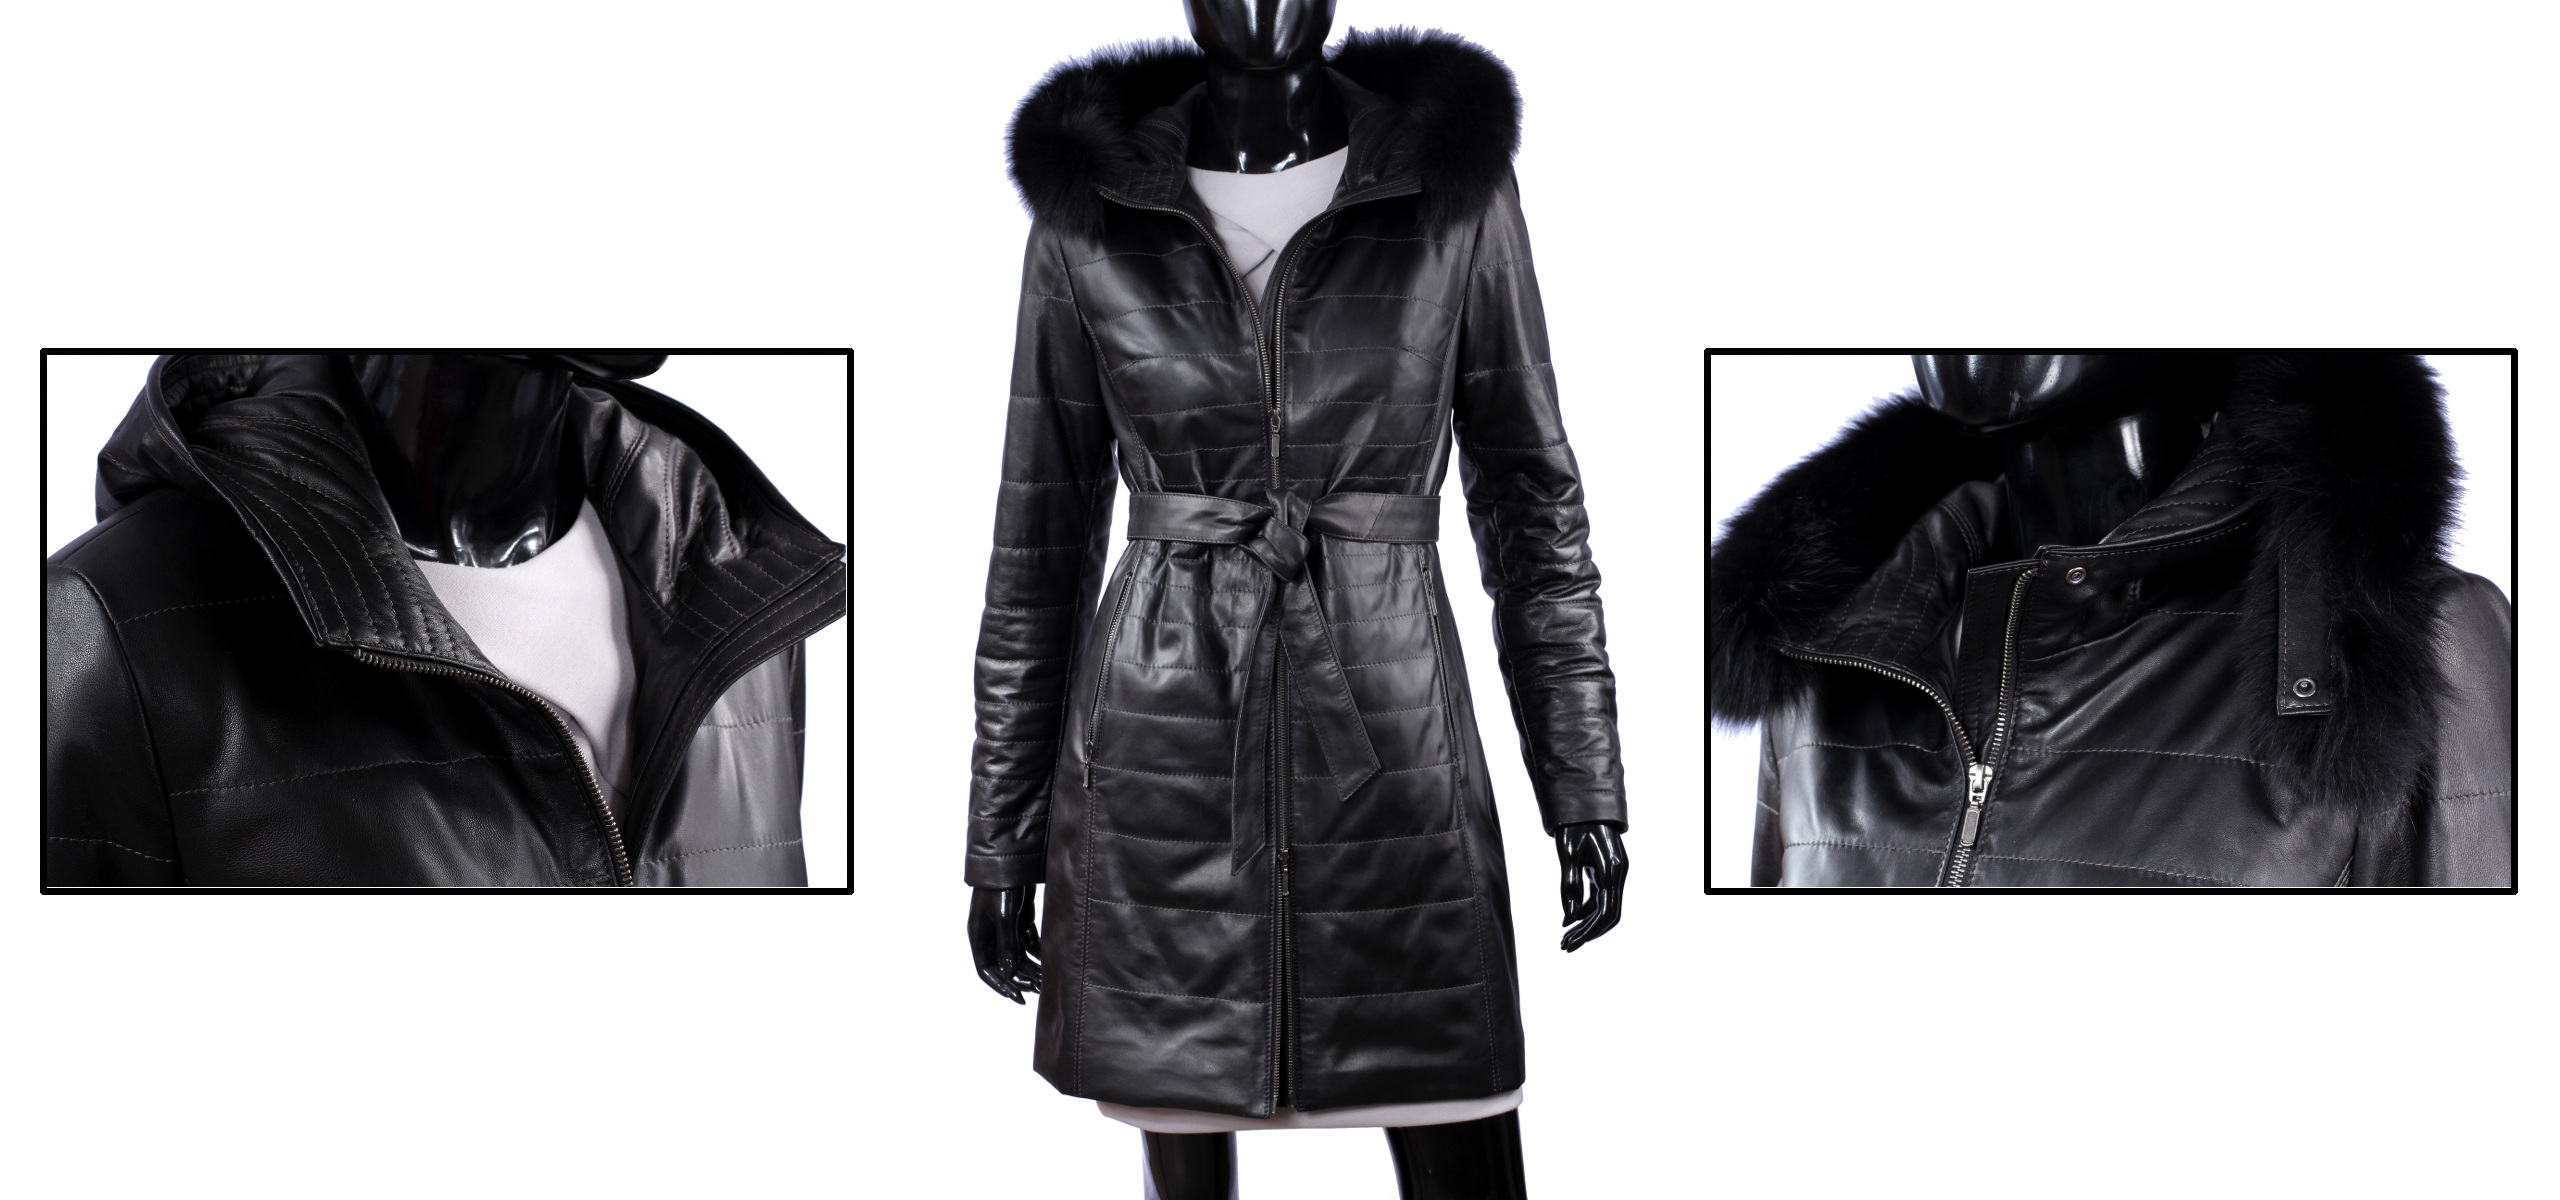 Dámsky kožený kabát Zimný DORJAN ANG450_4 XL Dominujúci materiál prírodná koža